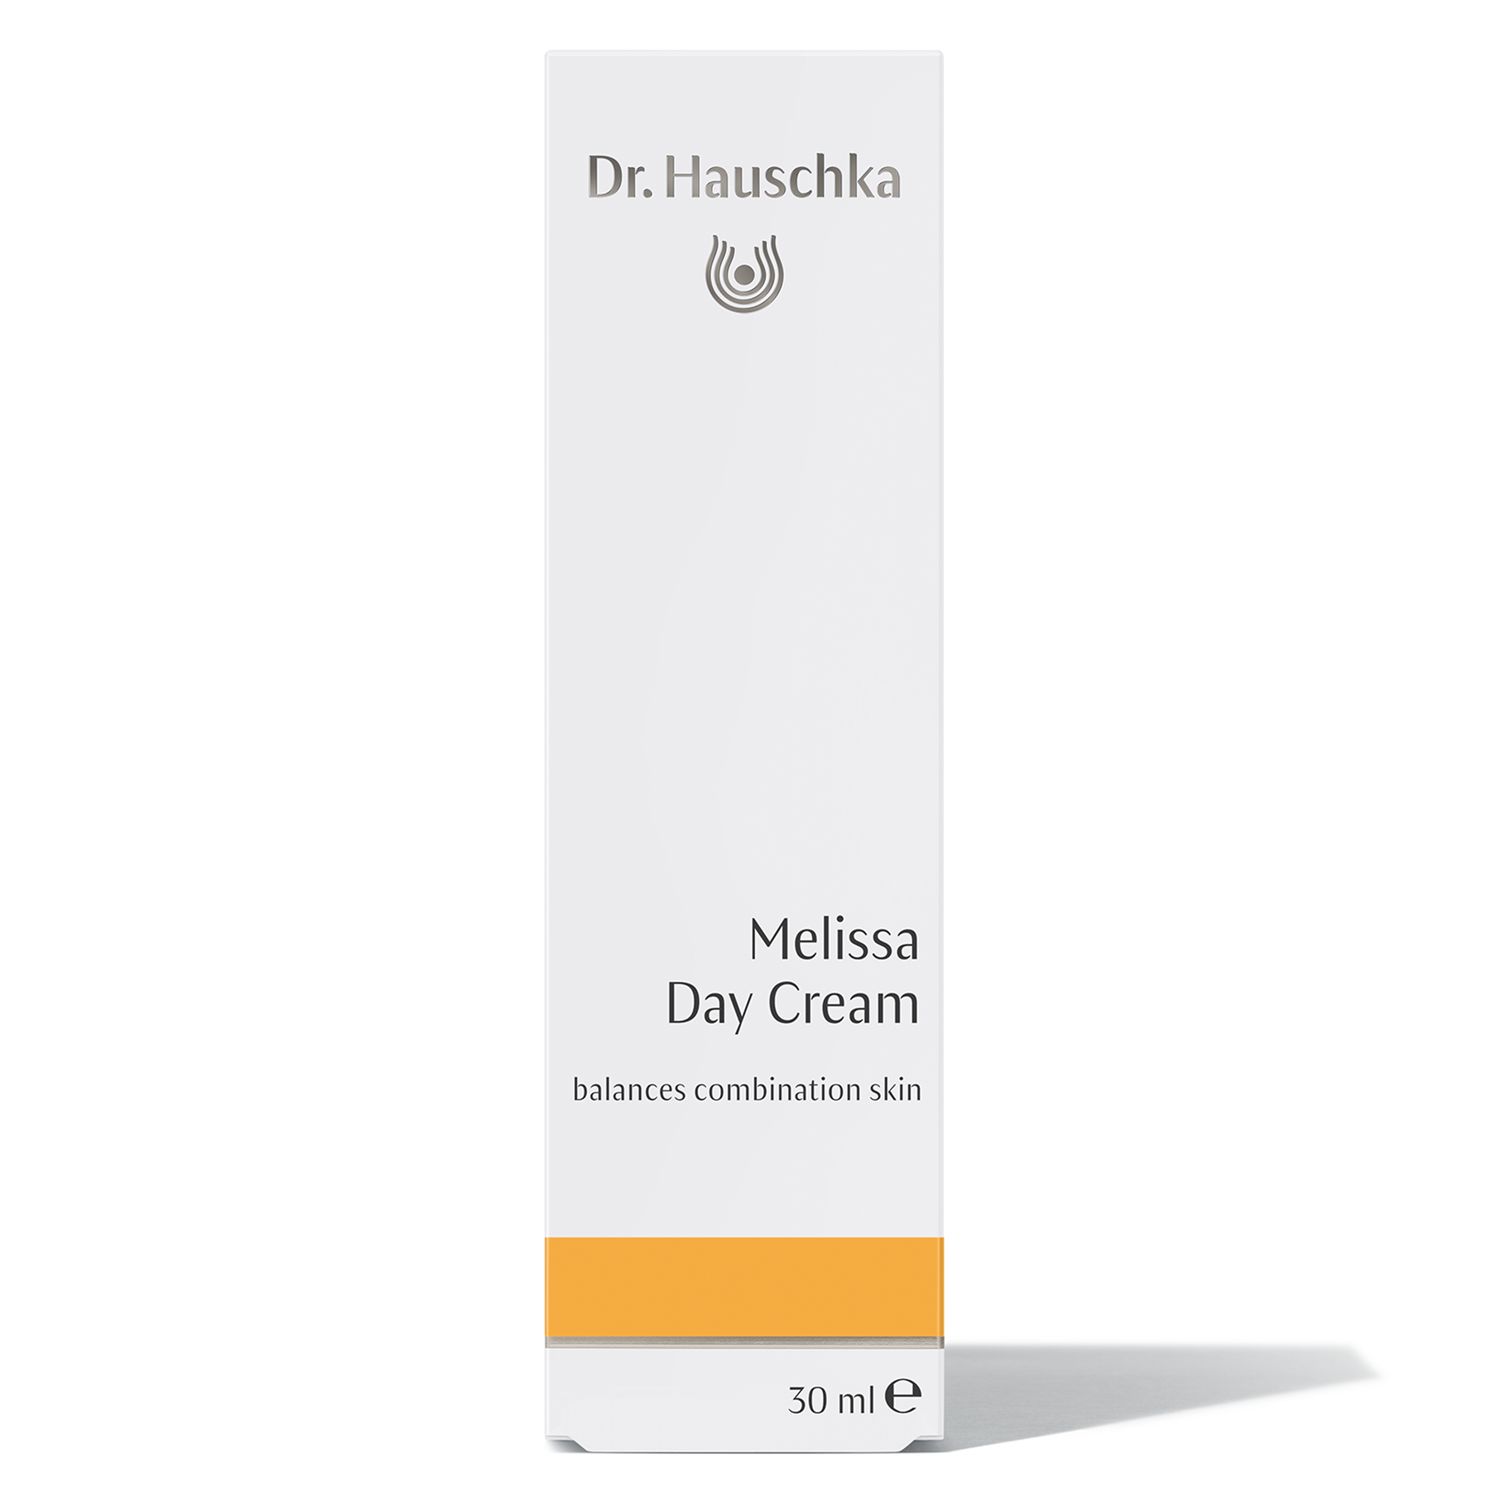 Dr Hauschka Melissa Day Cream, 30ml 2